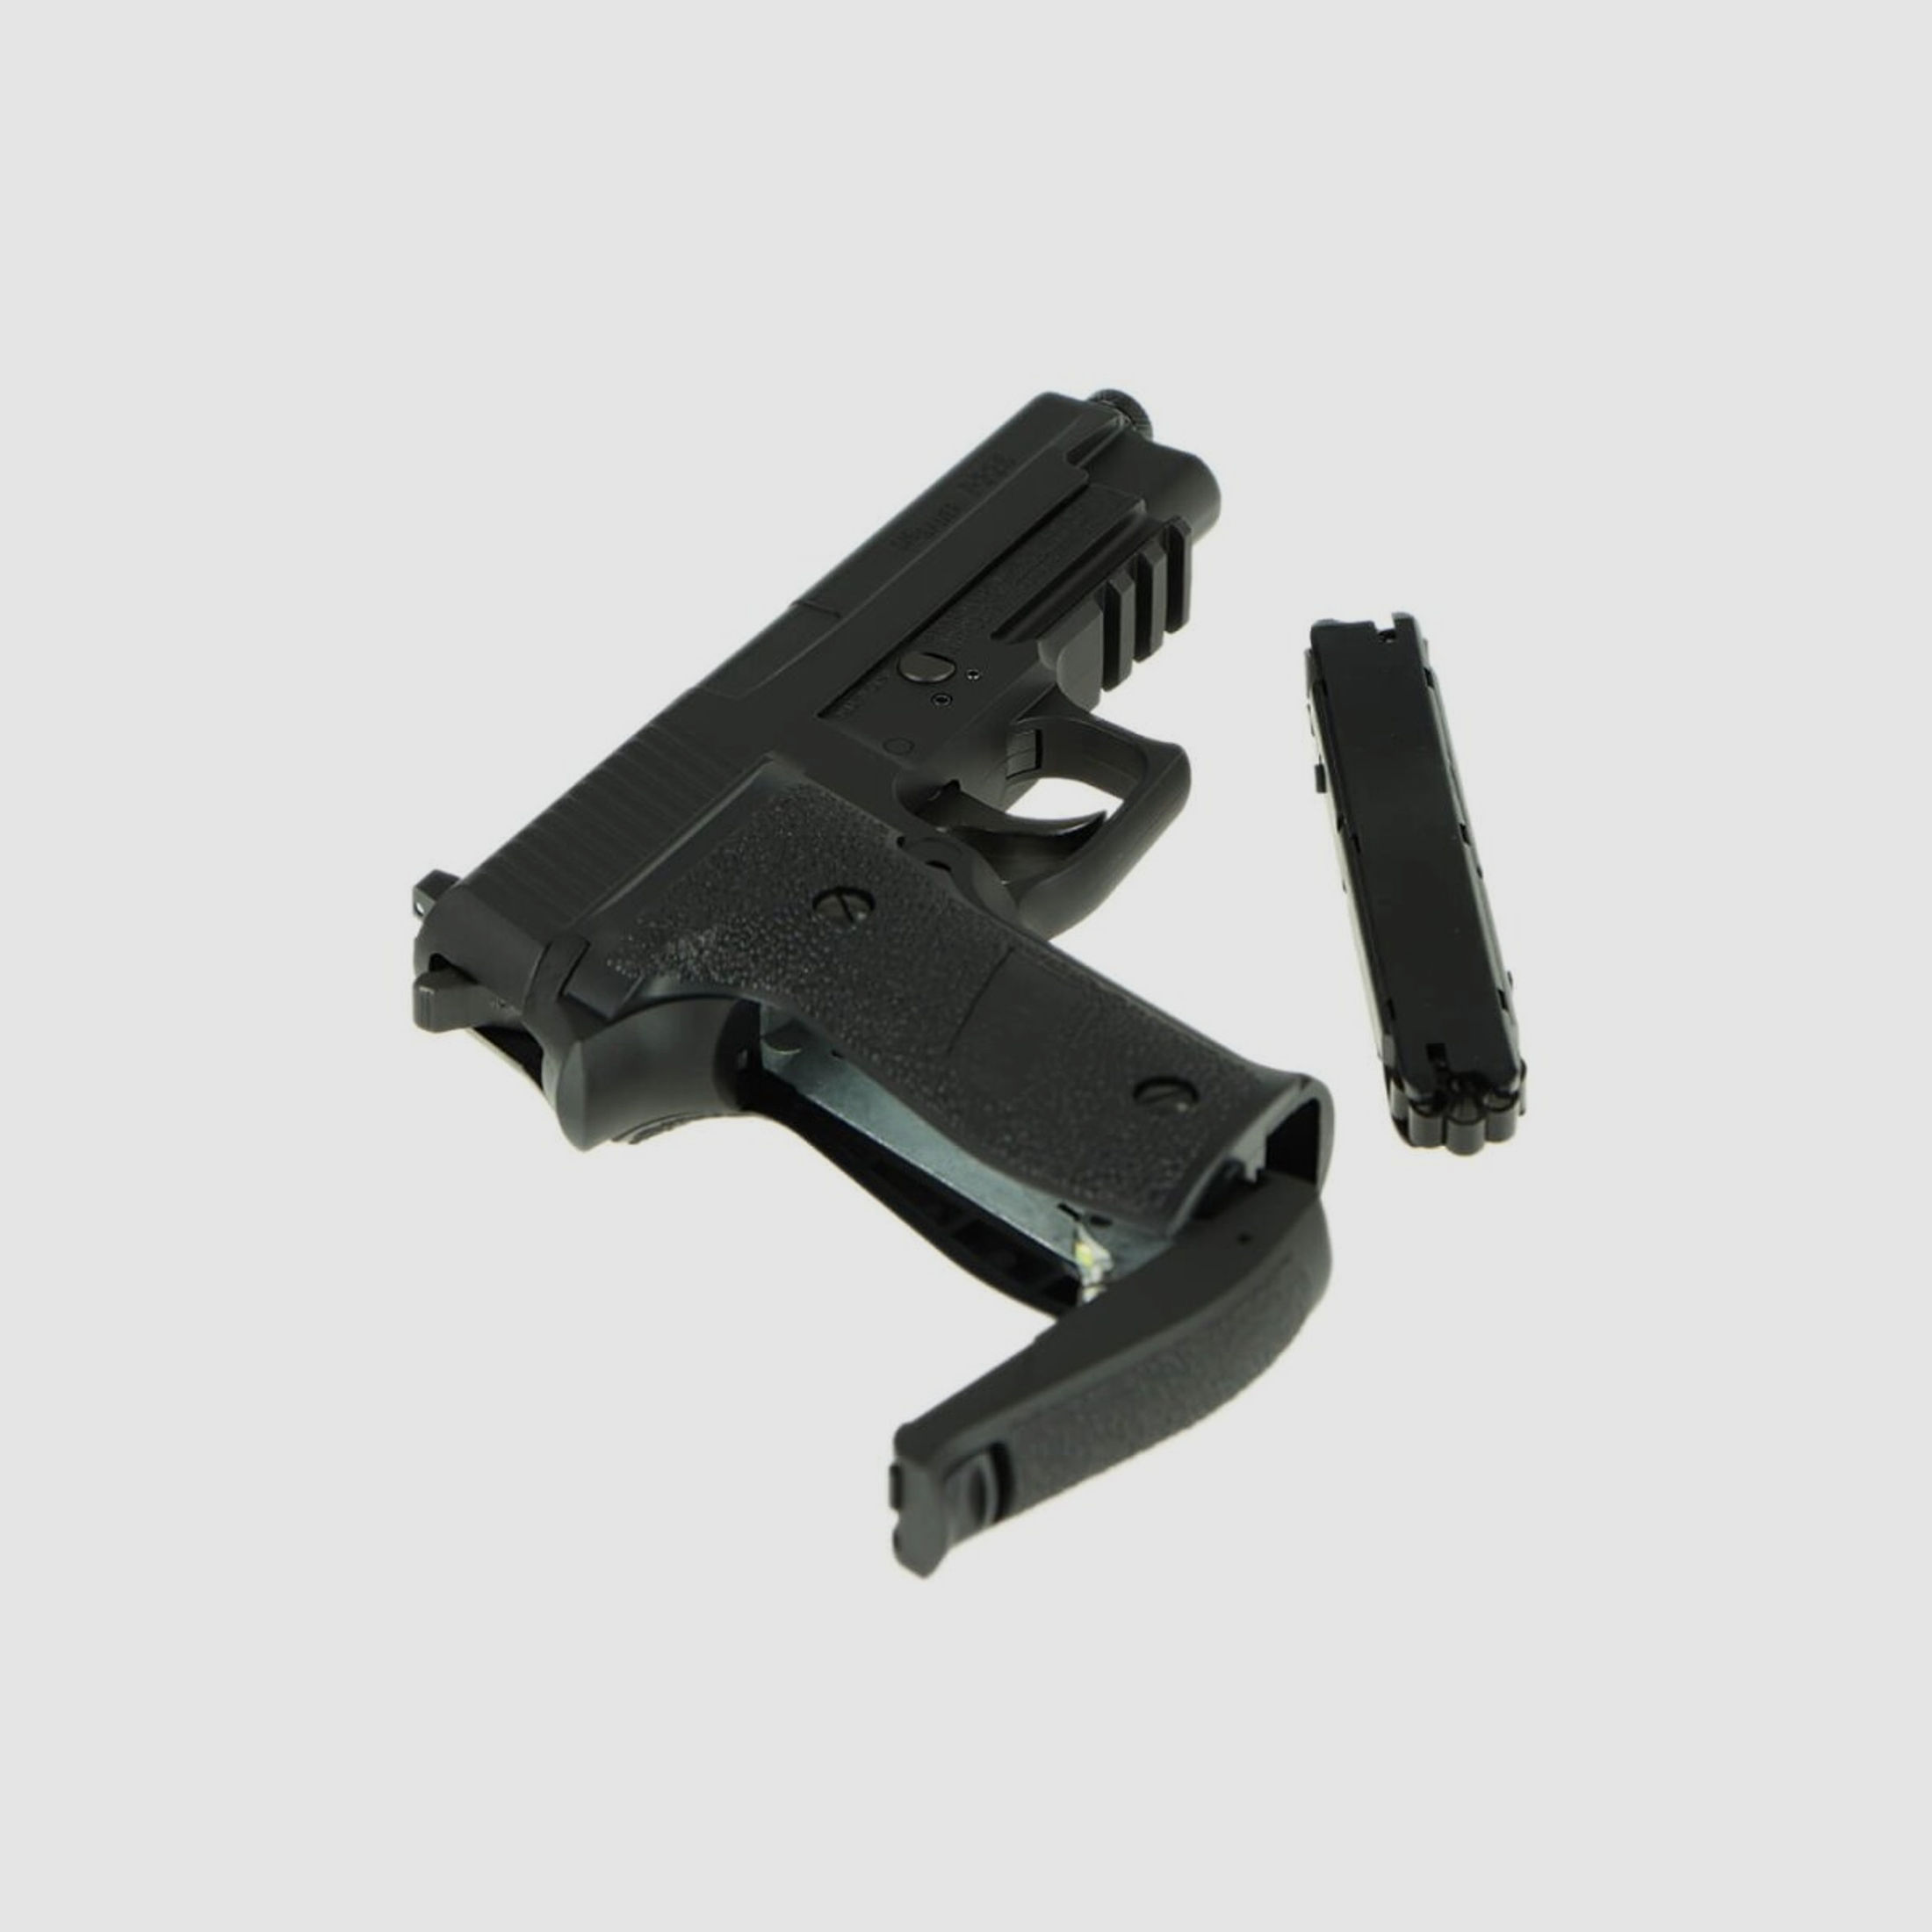 Sig Sauer P226 schwarz cal. 4,5mm Diabolo